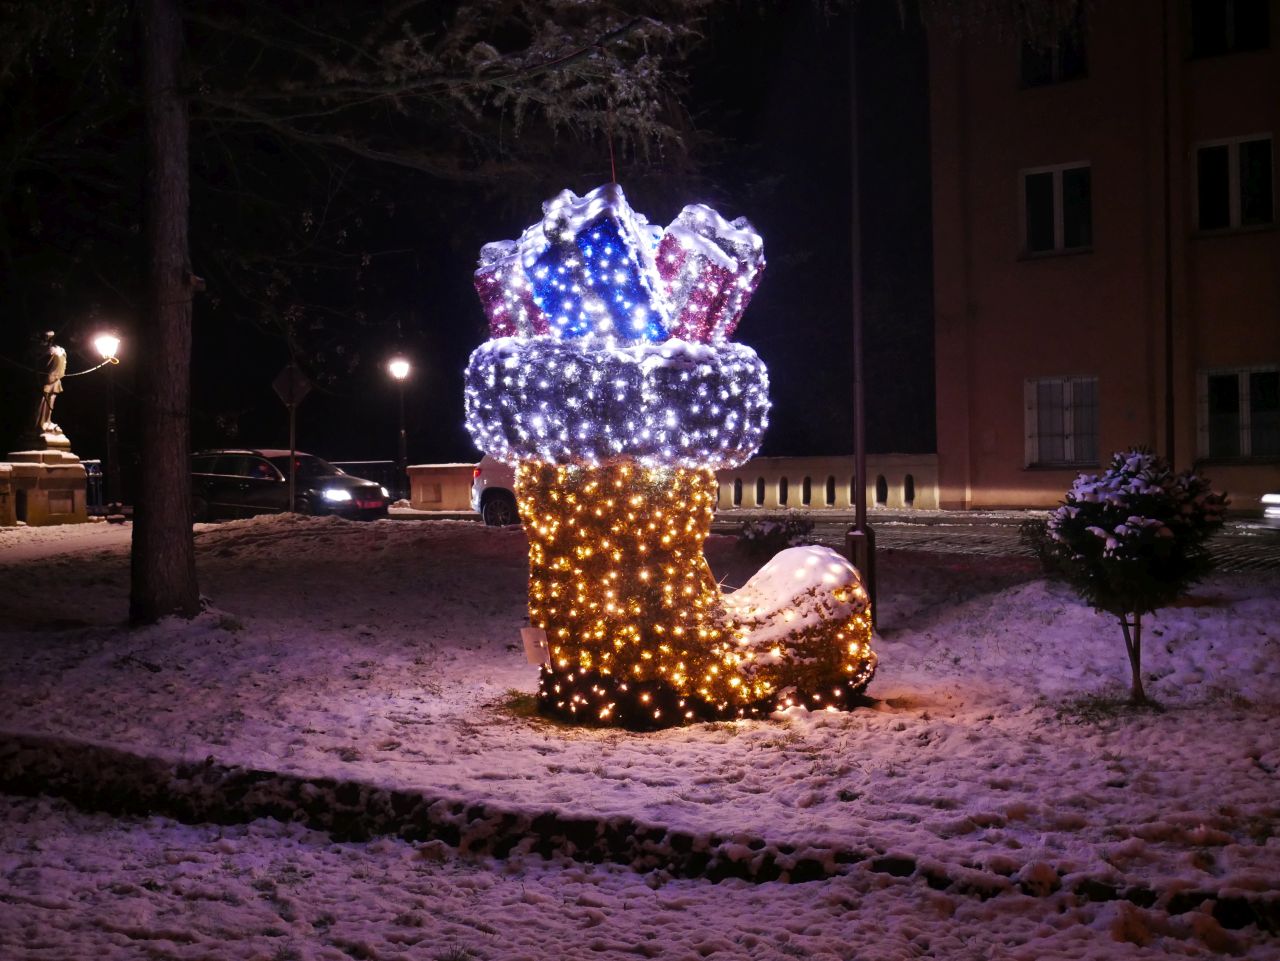 Rok temu w tym miejscu Mikołaj zgubił prezenty - w tym roku wszystko jest jak trzeba, a prezenty trafiły do buta :) - Fot. Tomek @ szprotawa.org.pl